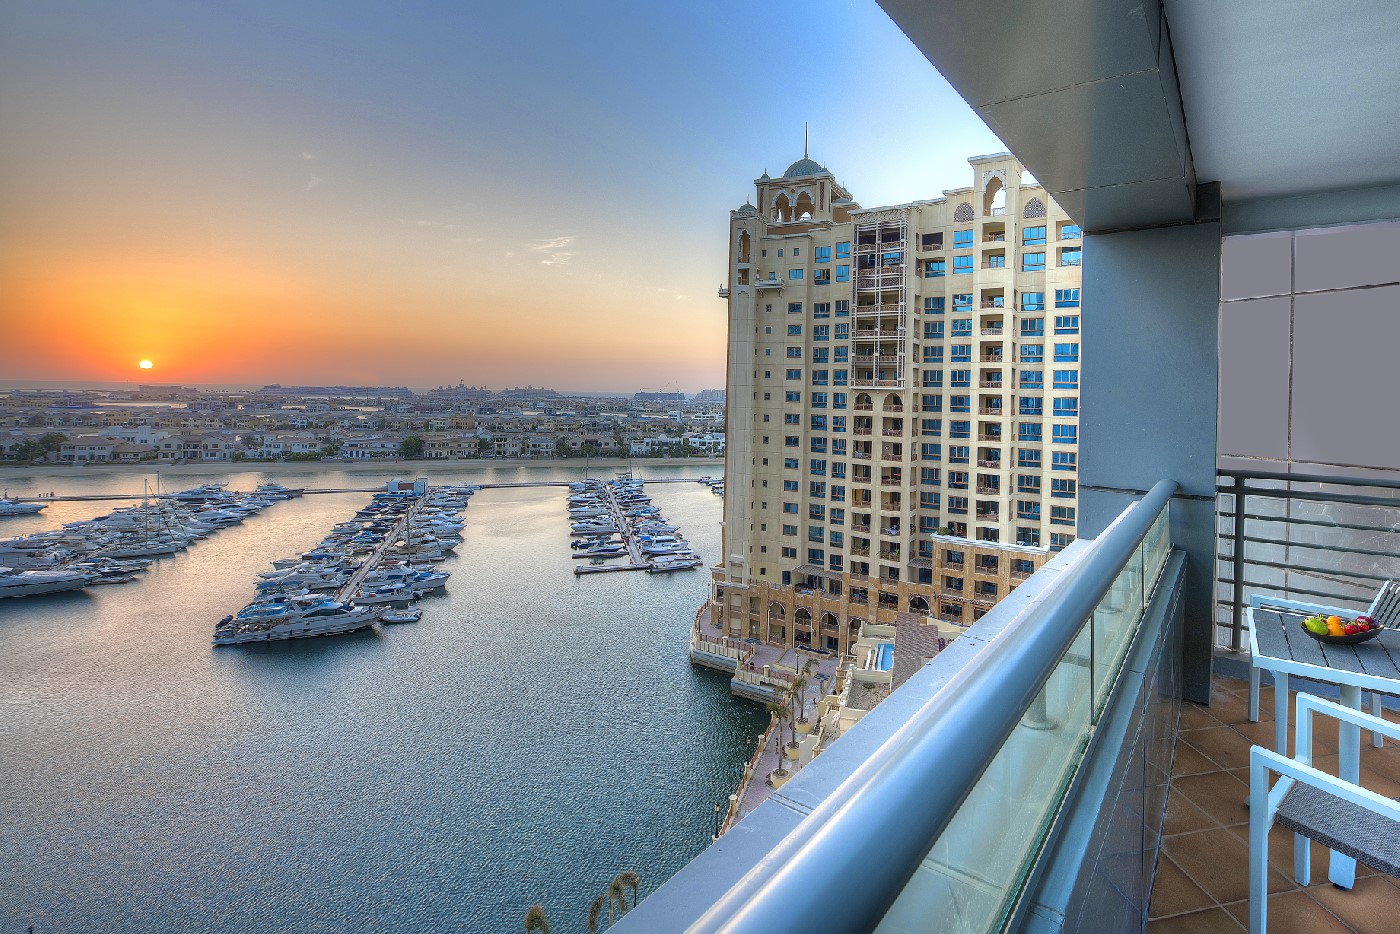 Dukes Dubai balcony view of the sea and boats